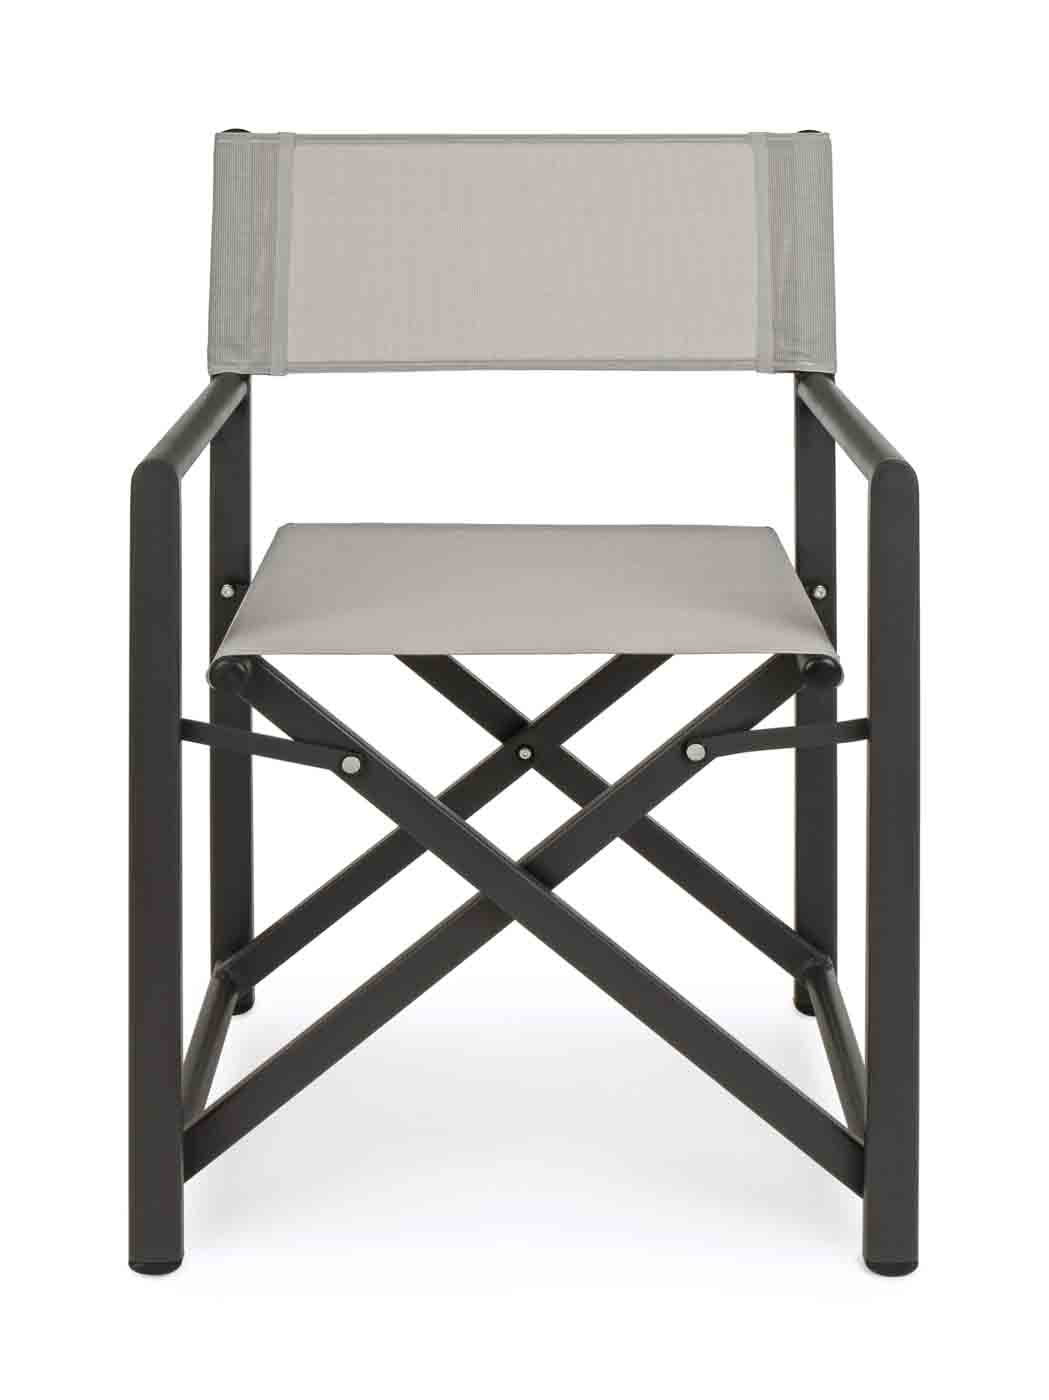 Klappbarer Regiestuhl aus Aluminium mit hochwertigem Textilenebezug für hohen Sitzkomfort.